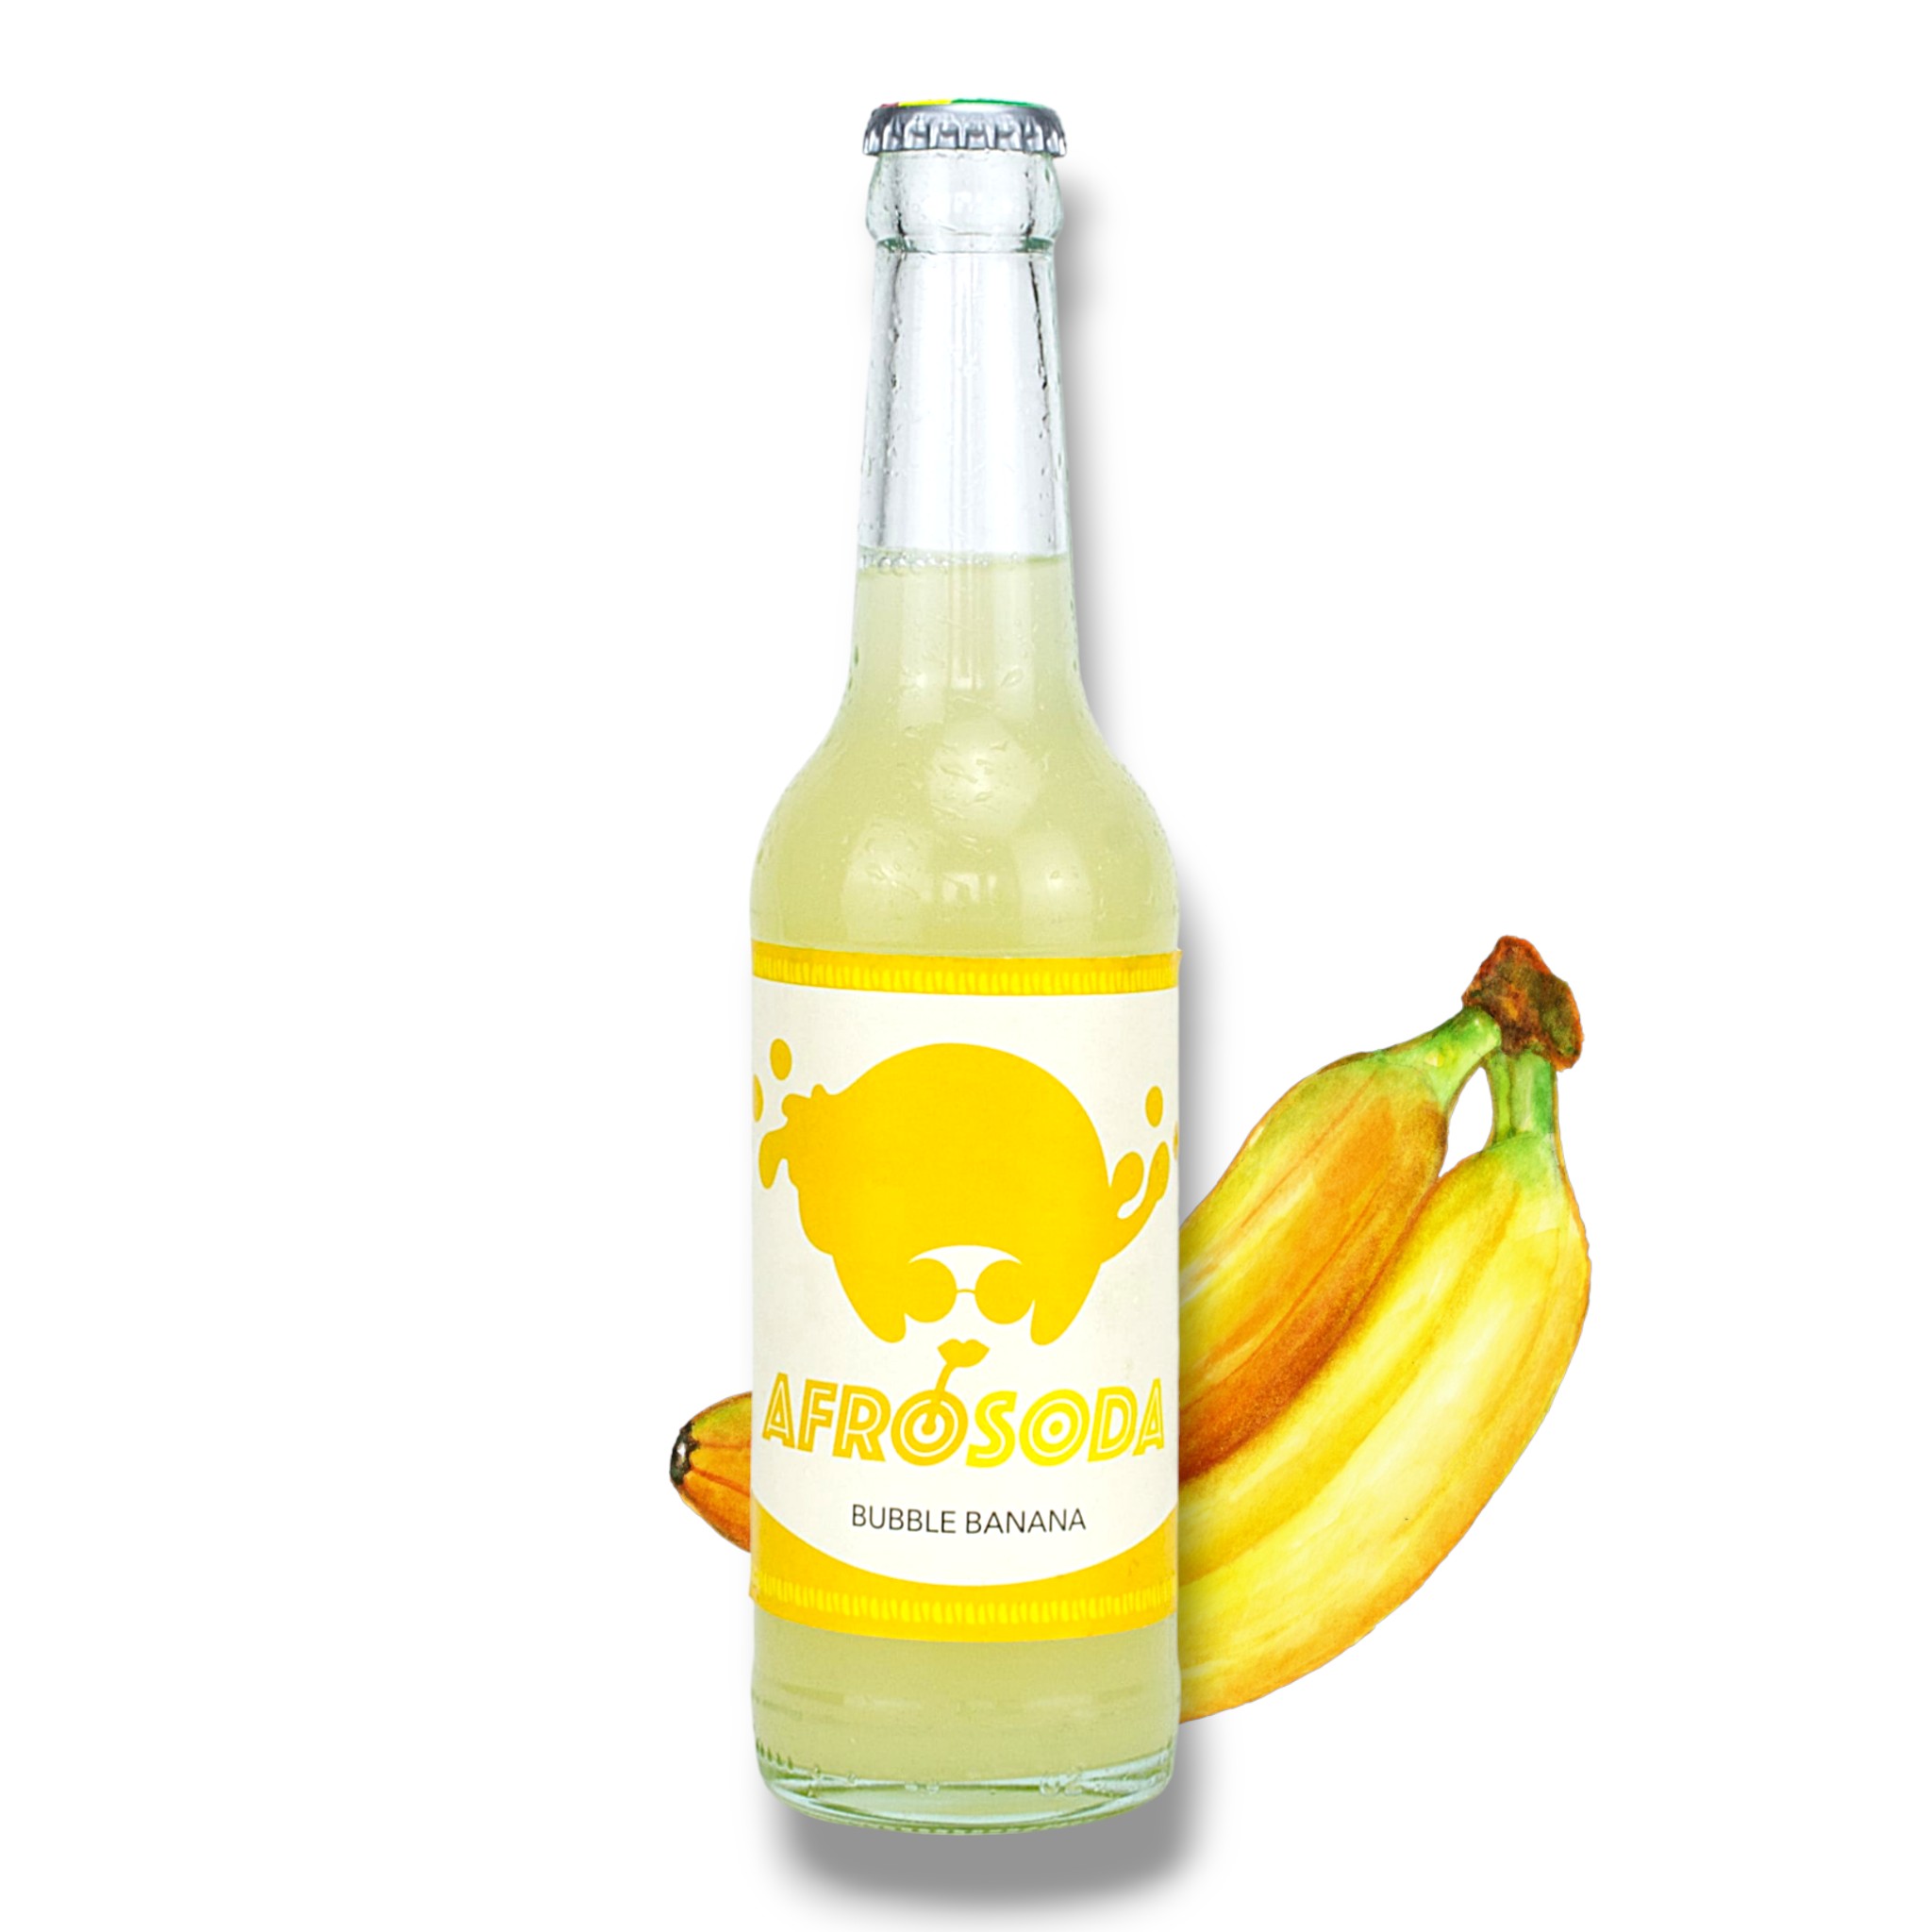 Neu! Afrosoda Bubble Banana 0,33l - Taste The Beat - Erfrischungsgetränk mit Bananengeschmack